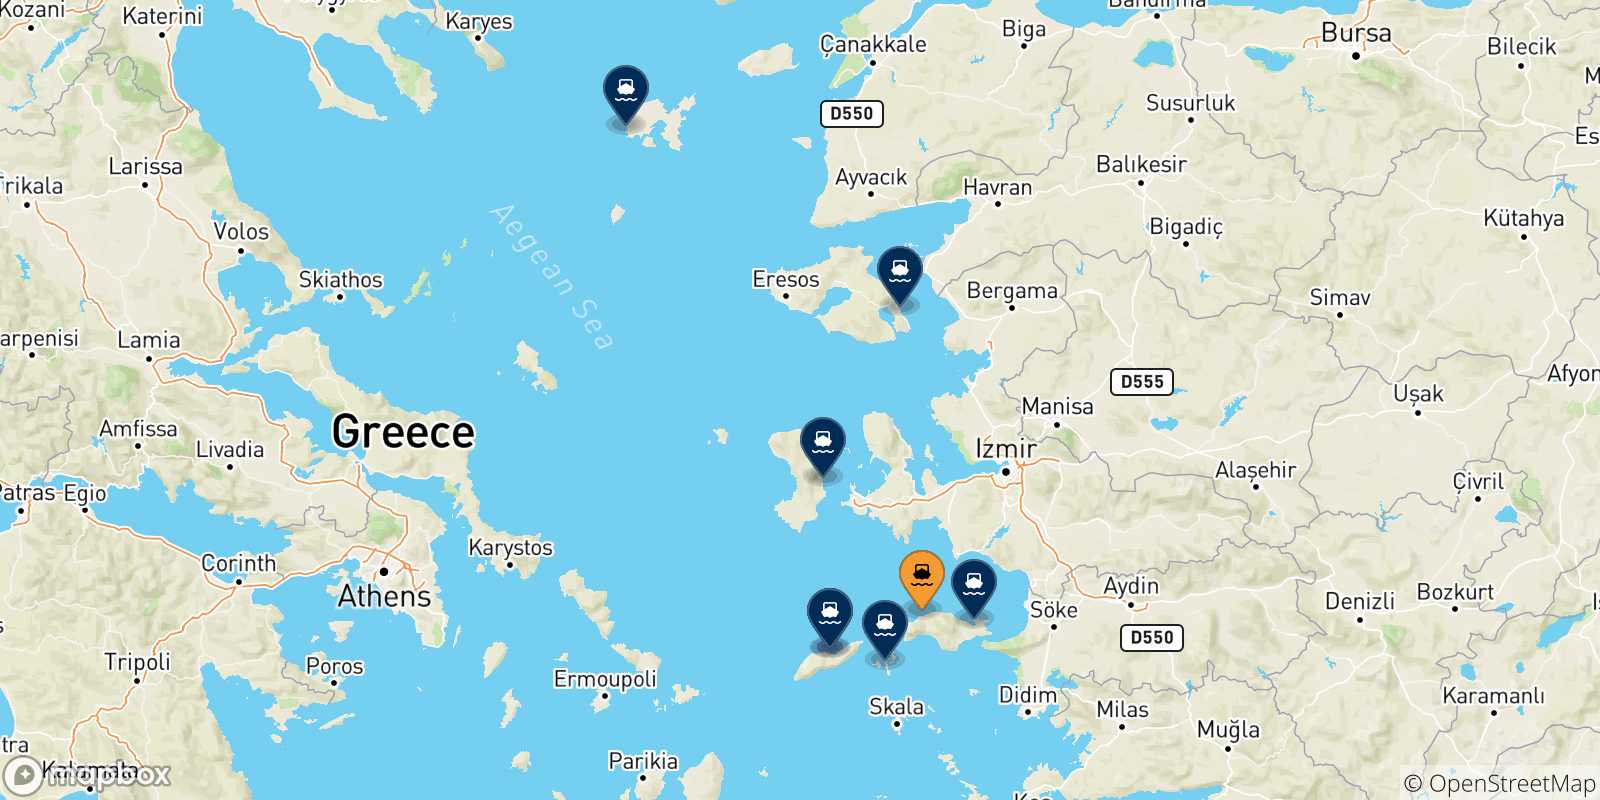 Mappa delle possibili rotte tra Karlovassi (Samos) e le Isole Egeo Nord Orientale